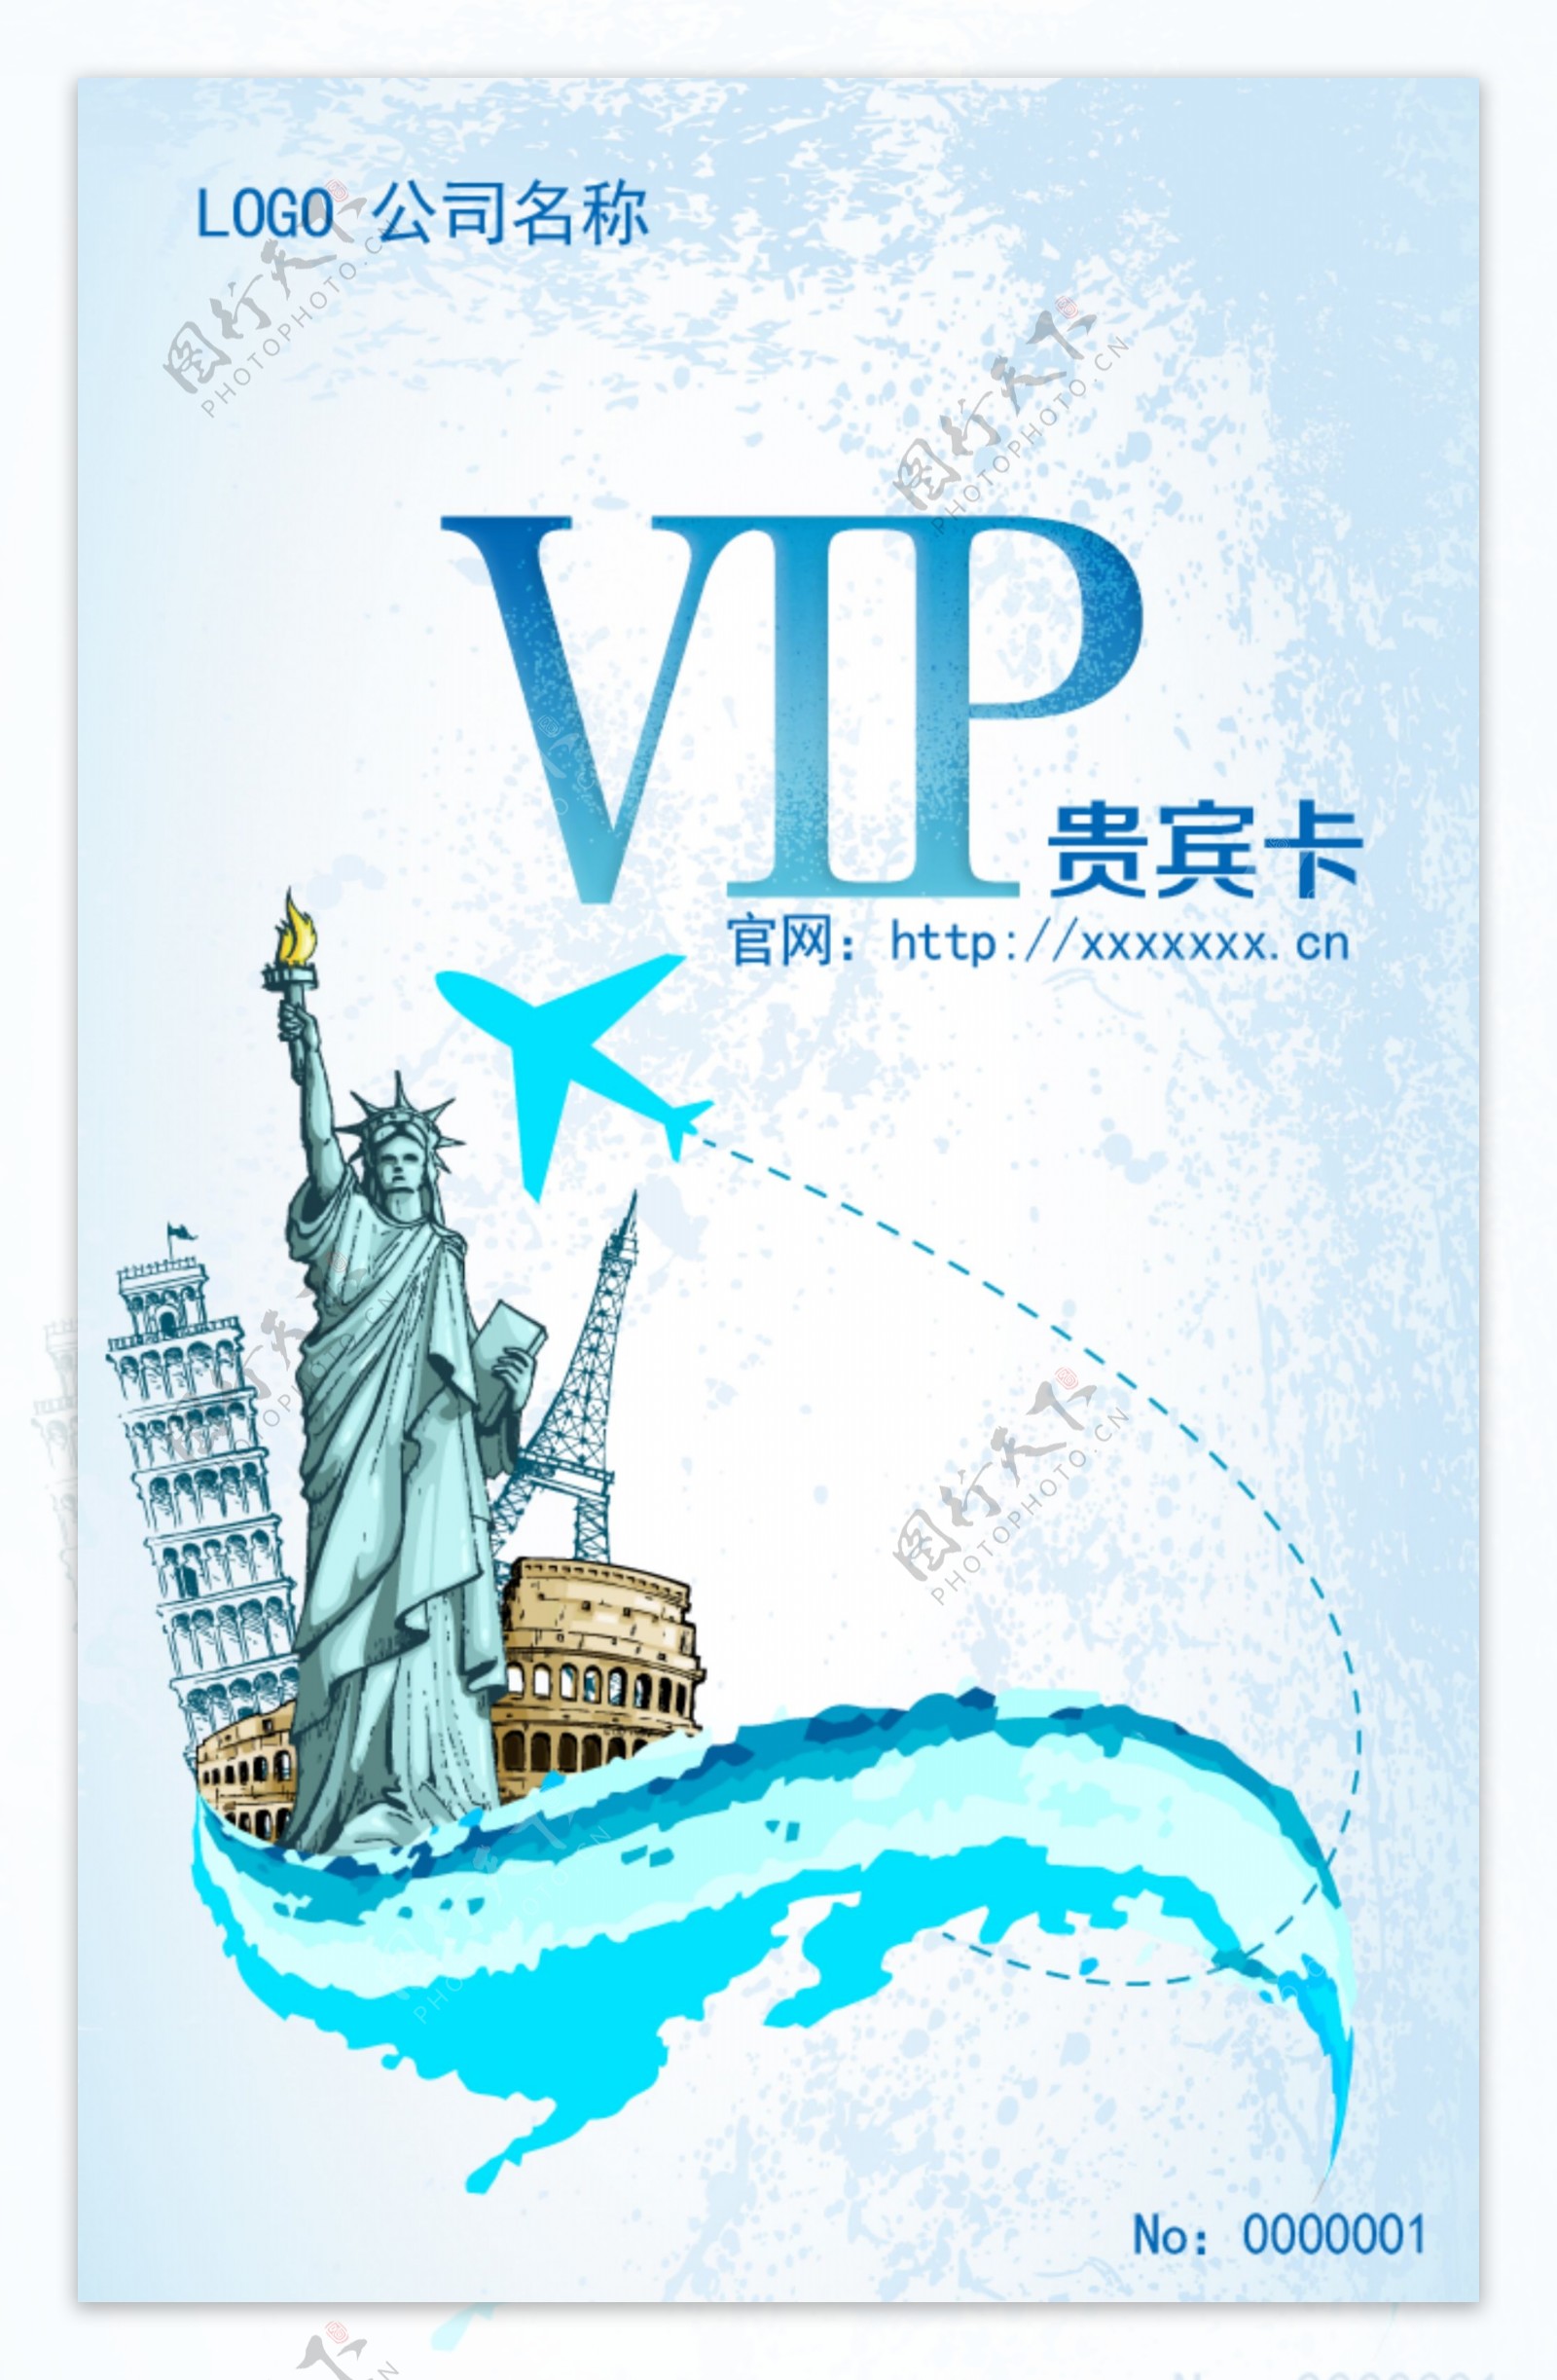 旅游卡贵宾卡VIP卡